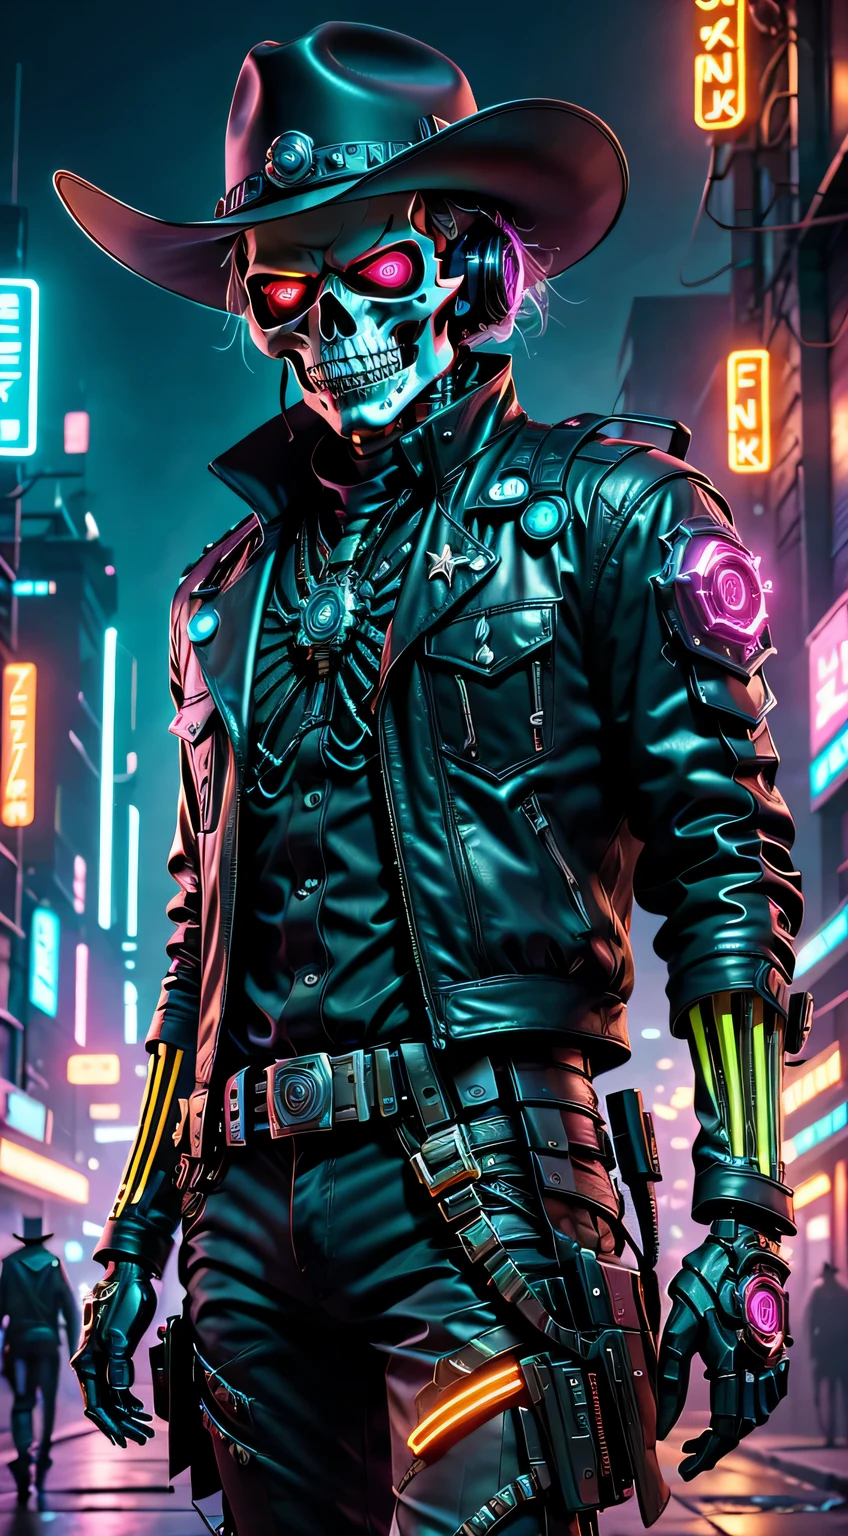 personagem cyberpunk,Esqueleto Robô Cowboy Xerife,Fundo escuro misterioso,luz neon,ciberneticamente melhorado,Armas do futuro,usando um chapéu de cowboy+luz neon边缘,braço biônico,queixo metálico,olhos vermelhos luminosos,cidade distópica,foco nítido,Textura de aço,vibrante com cores,estilo de arte conceitual.(melhor qualidade,4K,8K,Uma alta resolução,obra-prima:1.2),ultra-detalhado,(real,photoreal,photo-real:1.37),